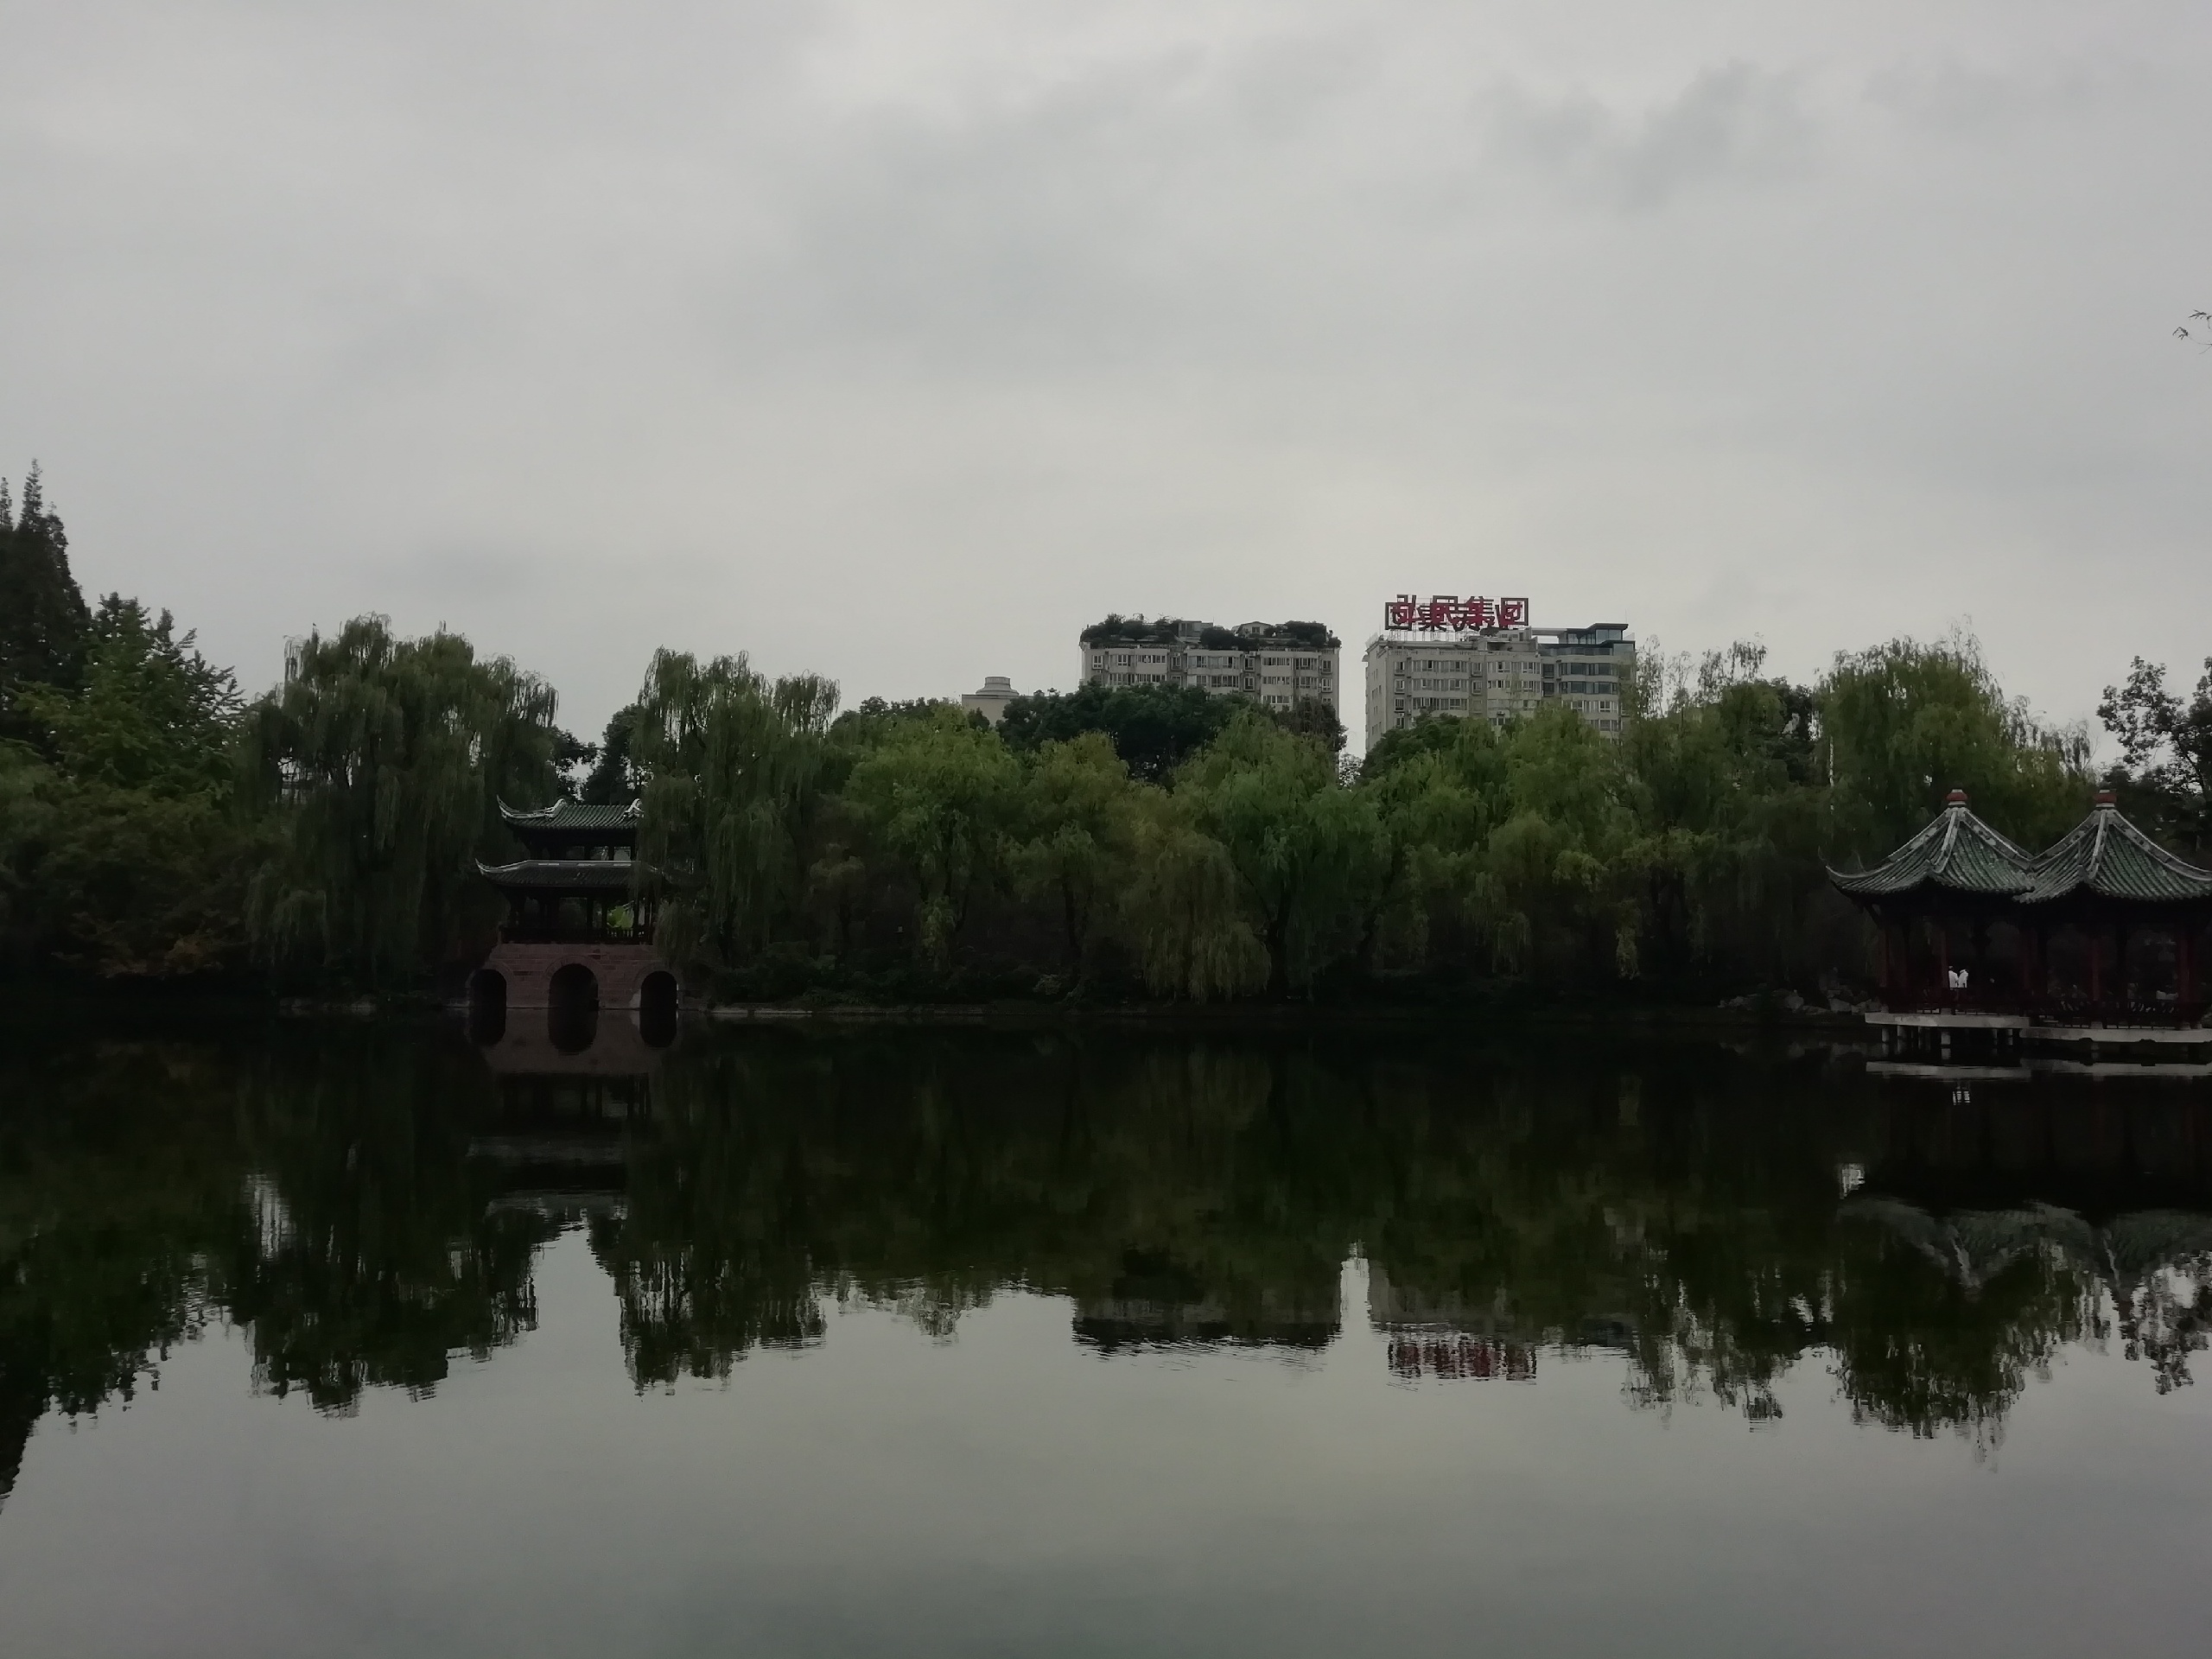 棠湖公园，一个环境清幽的城市公园，像个小园林，可是个散步溜达的好去处。